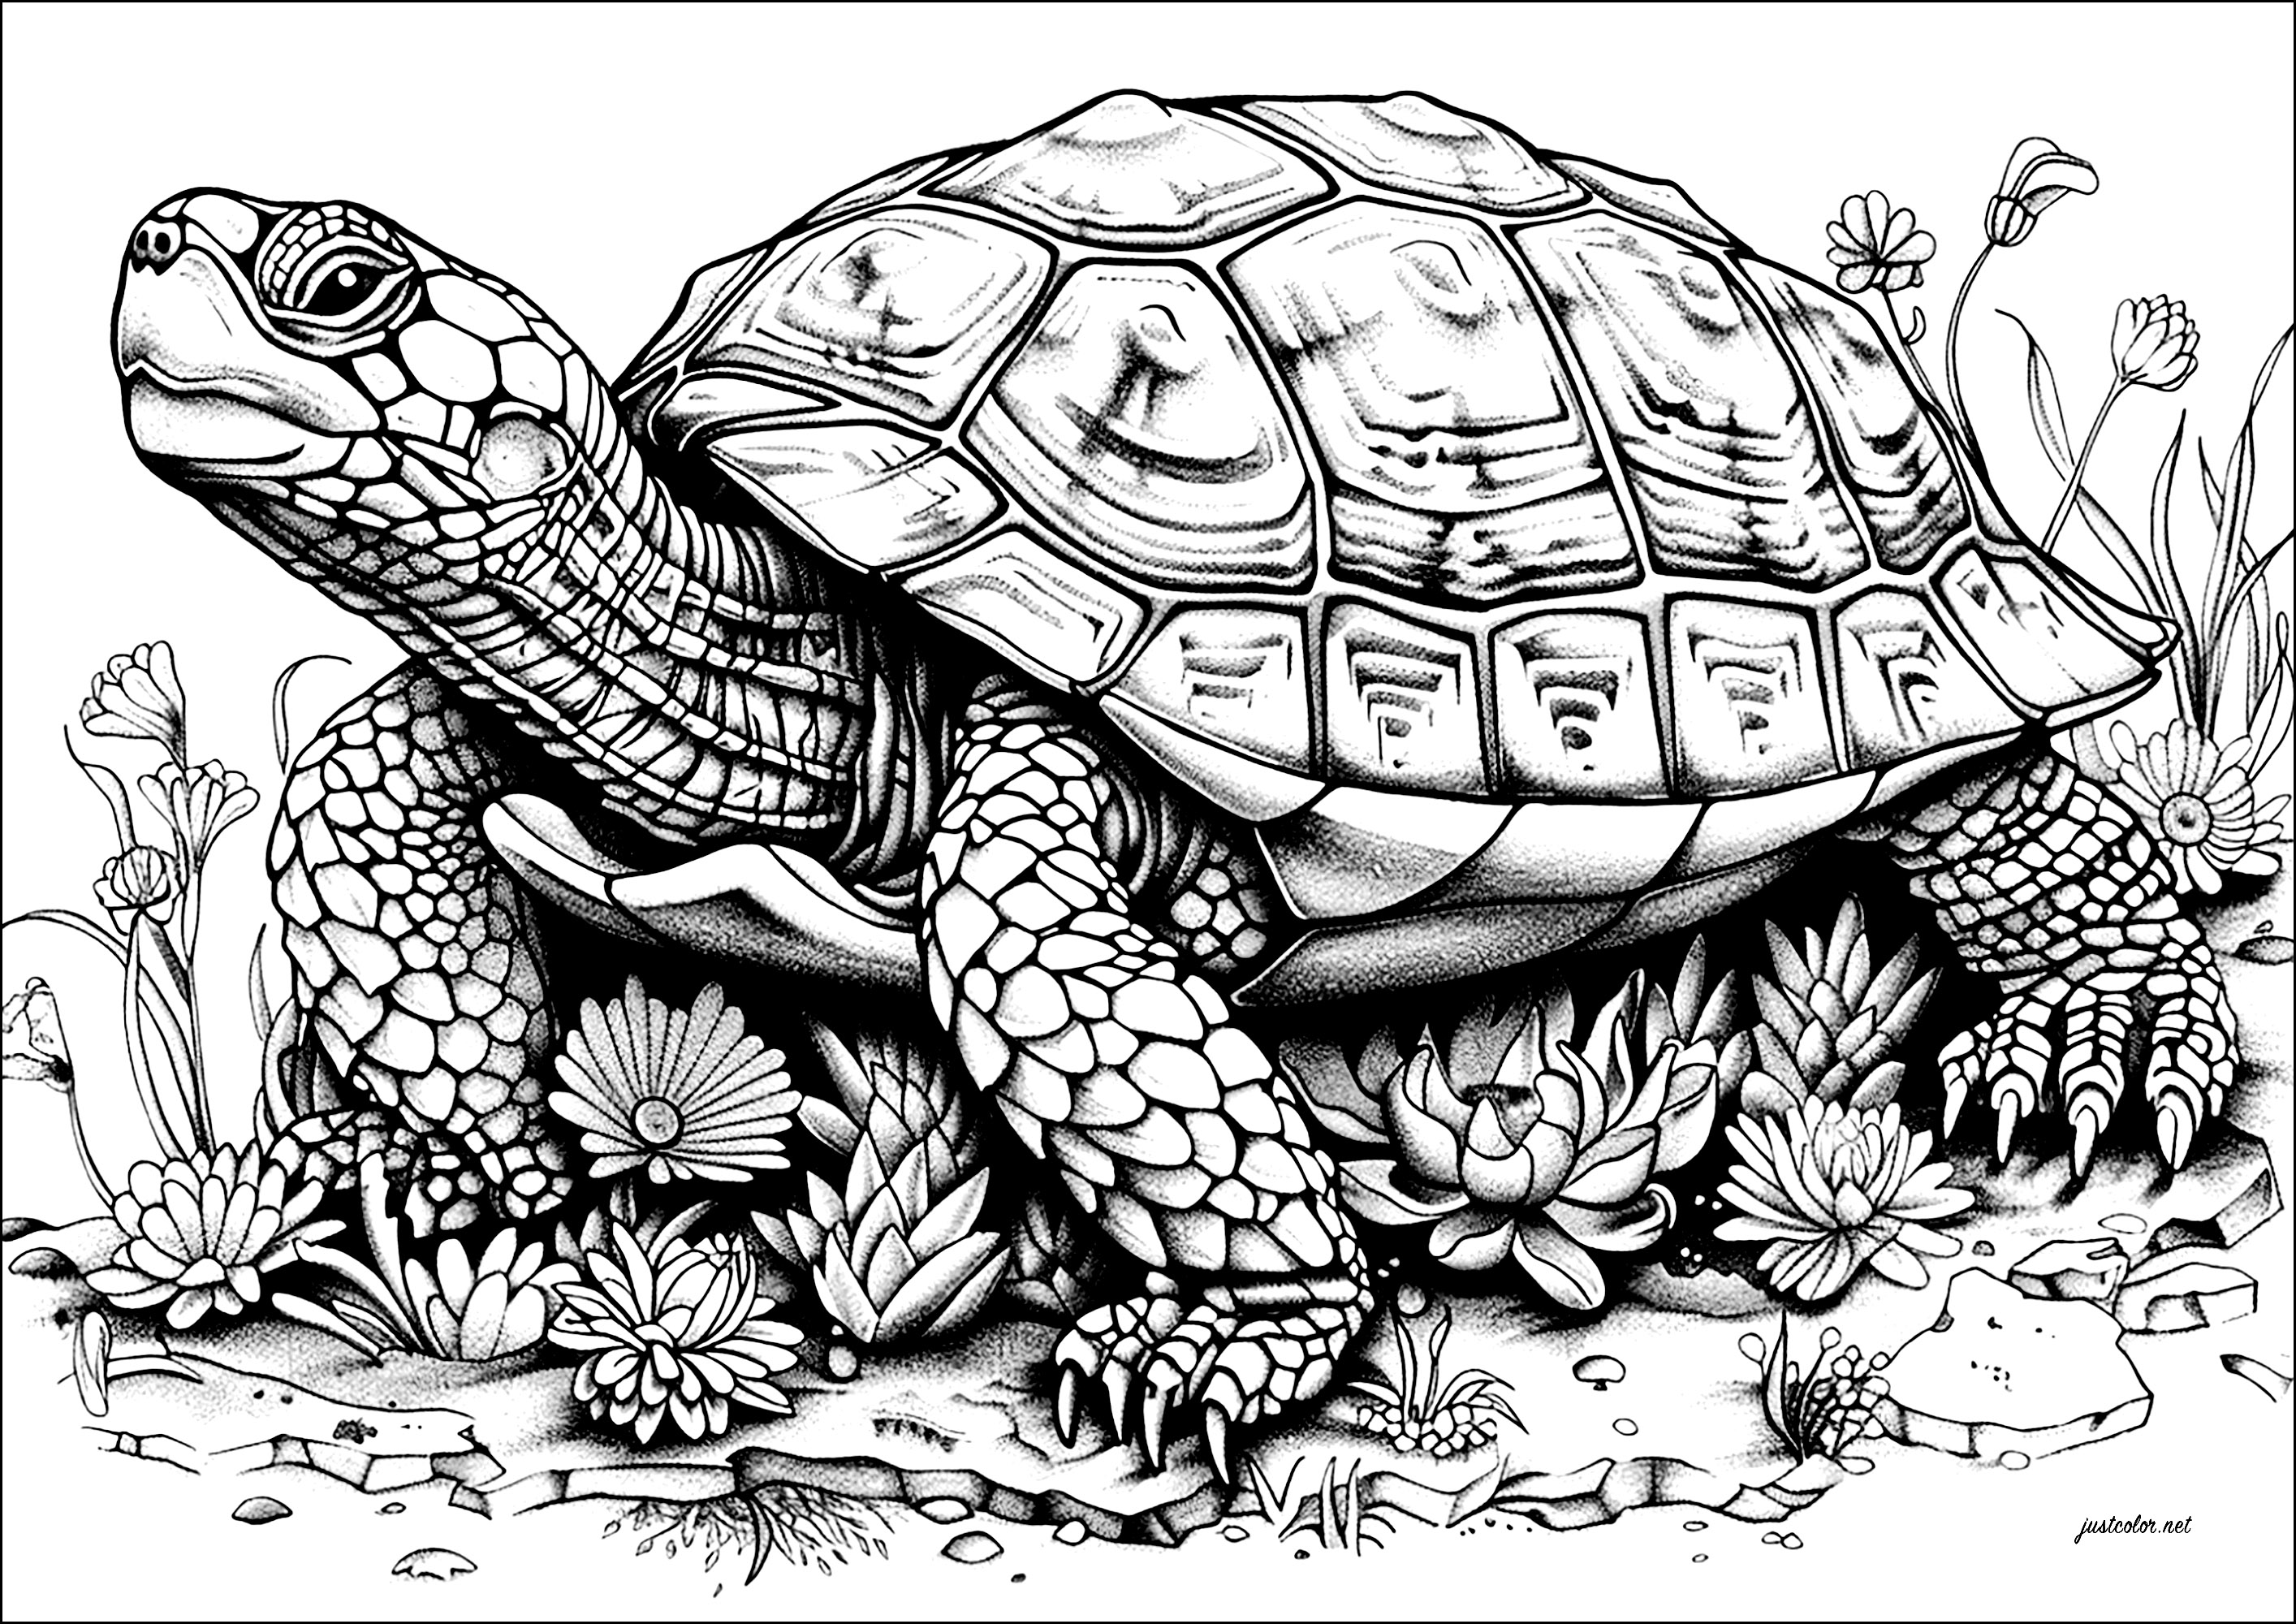 Coloriage d'une grande tortue avançant lentement, pleine de détails. La tête de cette tortue est surmontée d'une carapace impressionnante, ornée de motifs complexes que vous prendrez plaisir à colorier.Elle avance lentement, comme si elle portait le poids du monde sur son dos.